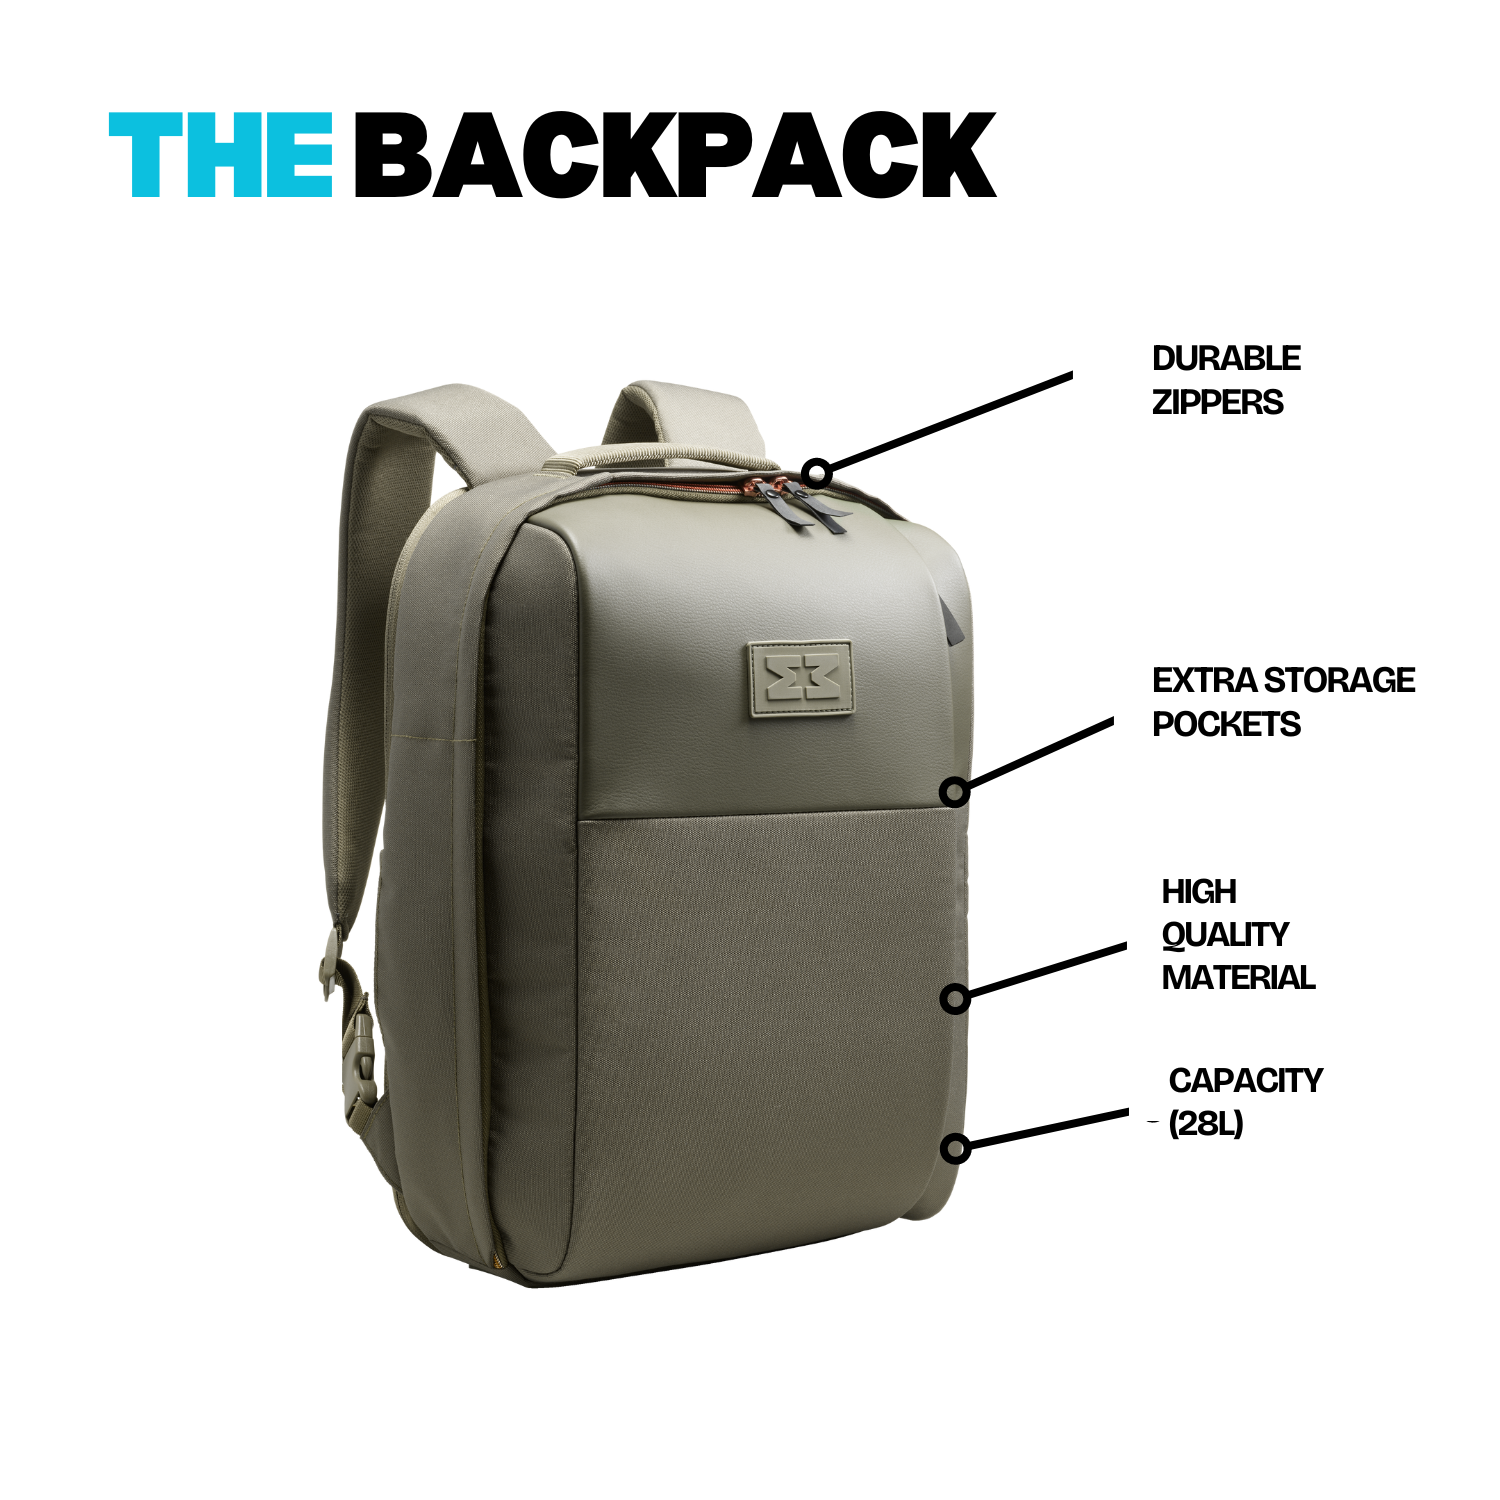 MiniMeis G5 Multipurpose Travel Backpack Olive Green